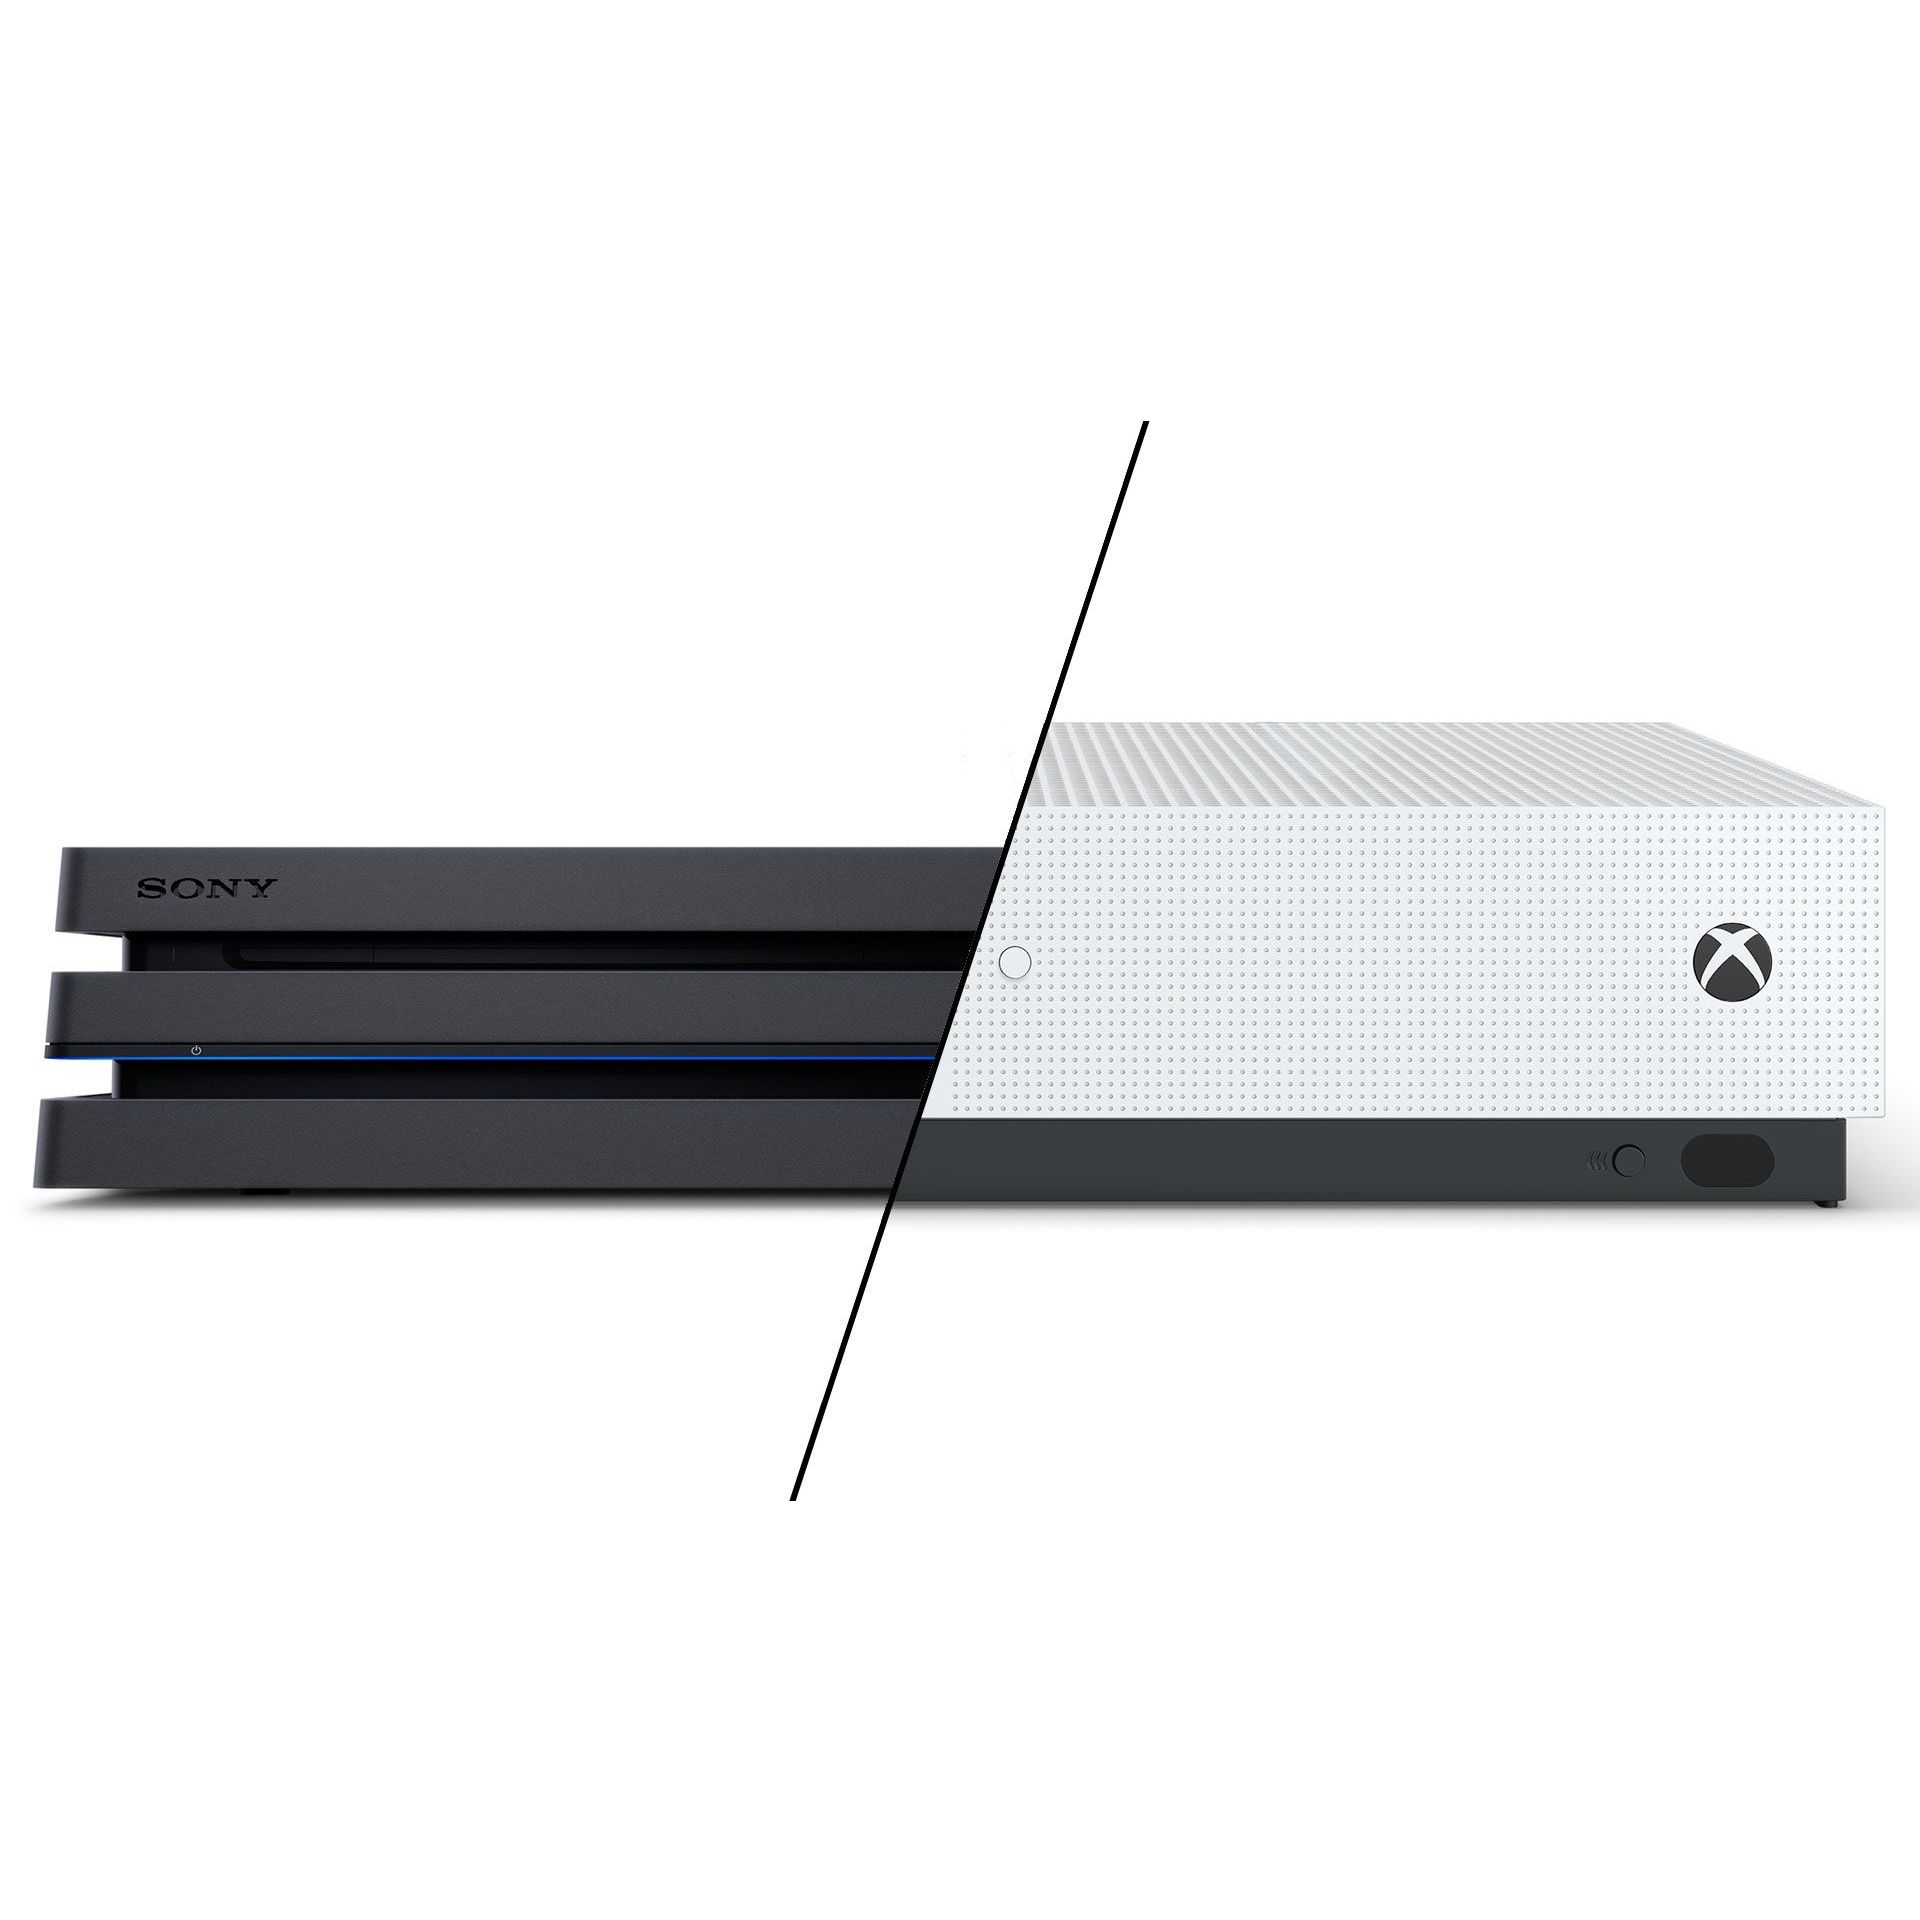 Regreso Inmundo Sumergido PS4 Pro vs Xbox One X – Which console should you buy?